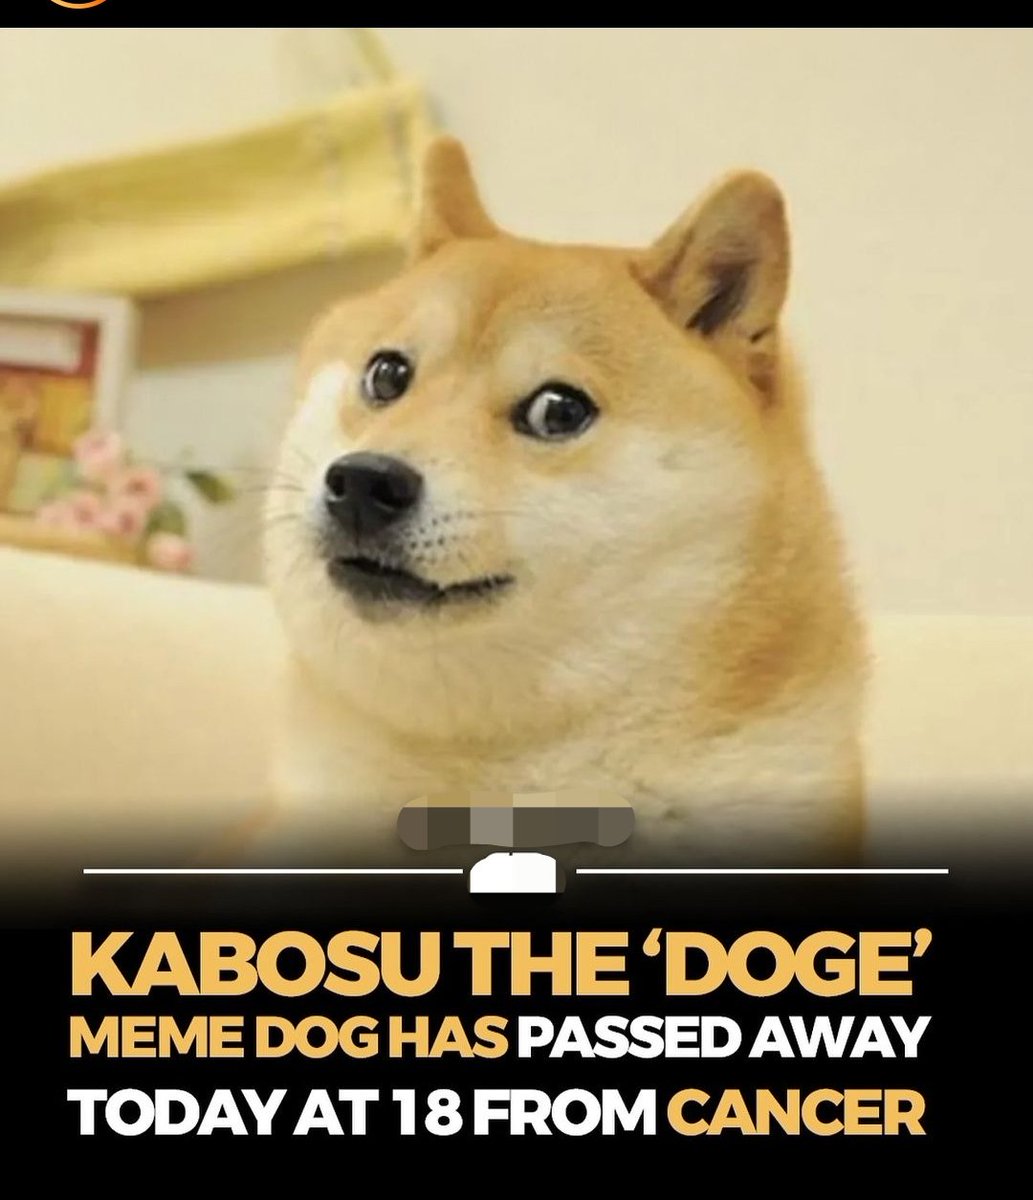 #Kabosu the #Doge meme dog has passed away today at 18 from cancer

#Ethereum #EthereumClassic #ETC #Crypto #BTC #Bitcoin #BTCETF #ETHETF #Pepe #Shib #Bonk #Bome #Ponke #Floki
#CryptoBull #BullRun #Bull #Bullish #Crypto #Cryptocurrency #PricePrediction